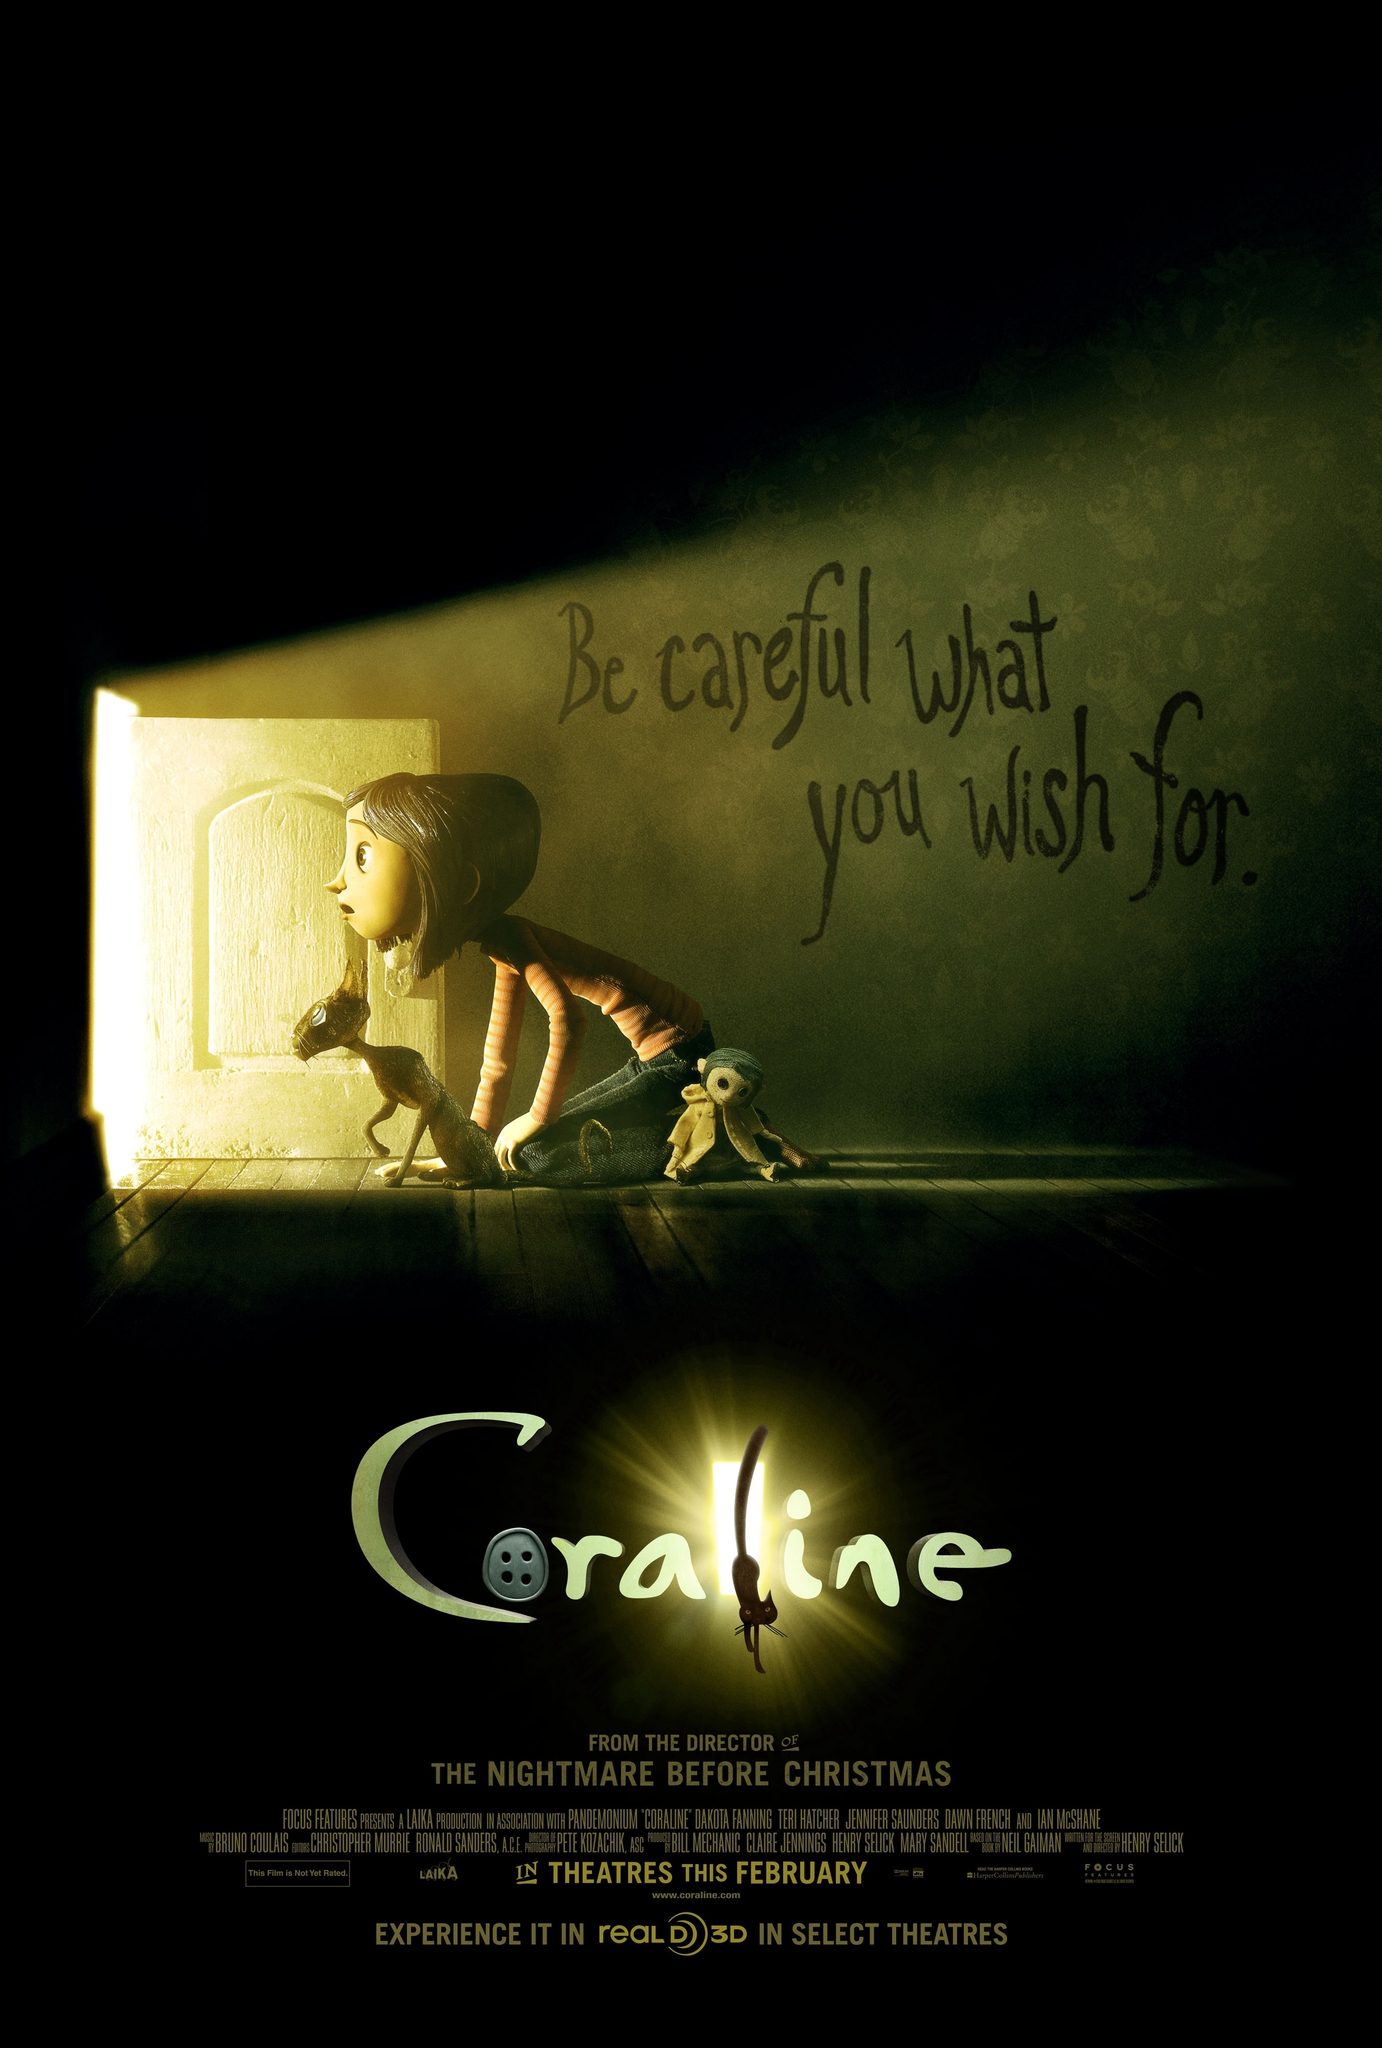 ดูหนังออนไลน์ฟรี Coraline โครอลไลน์กับโลกมิติพิศวง